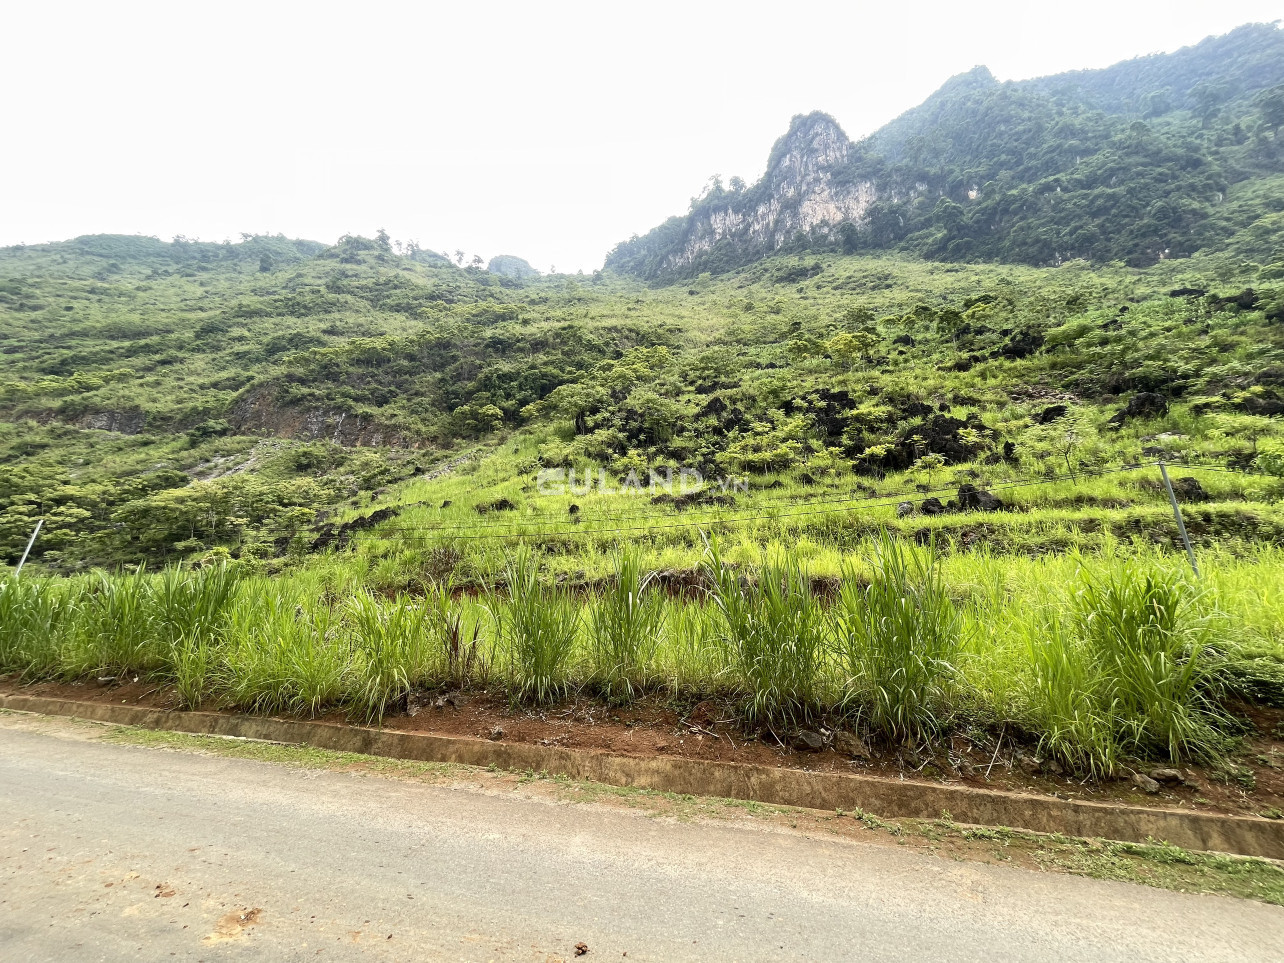 Thanh khoản nhanh lô đất khoảng 850m2 gần trung tâm Hà Giang